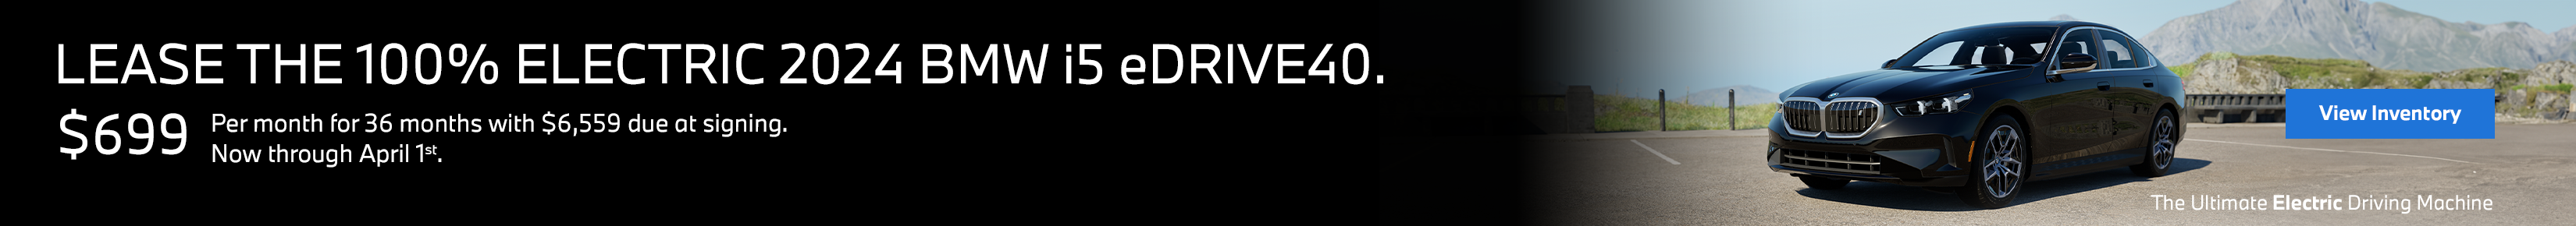 New i5 eDrive40 Offer